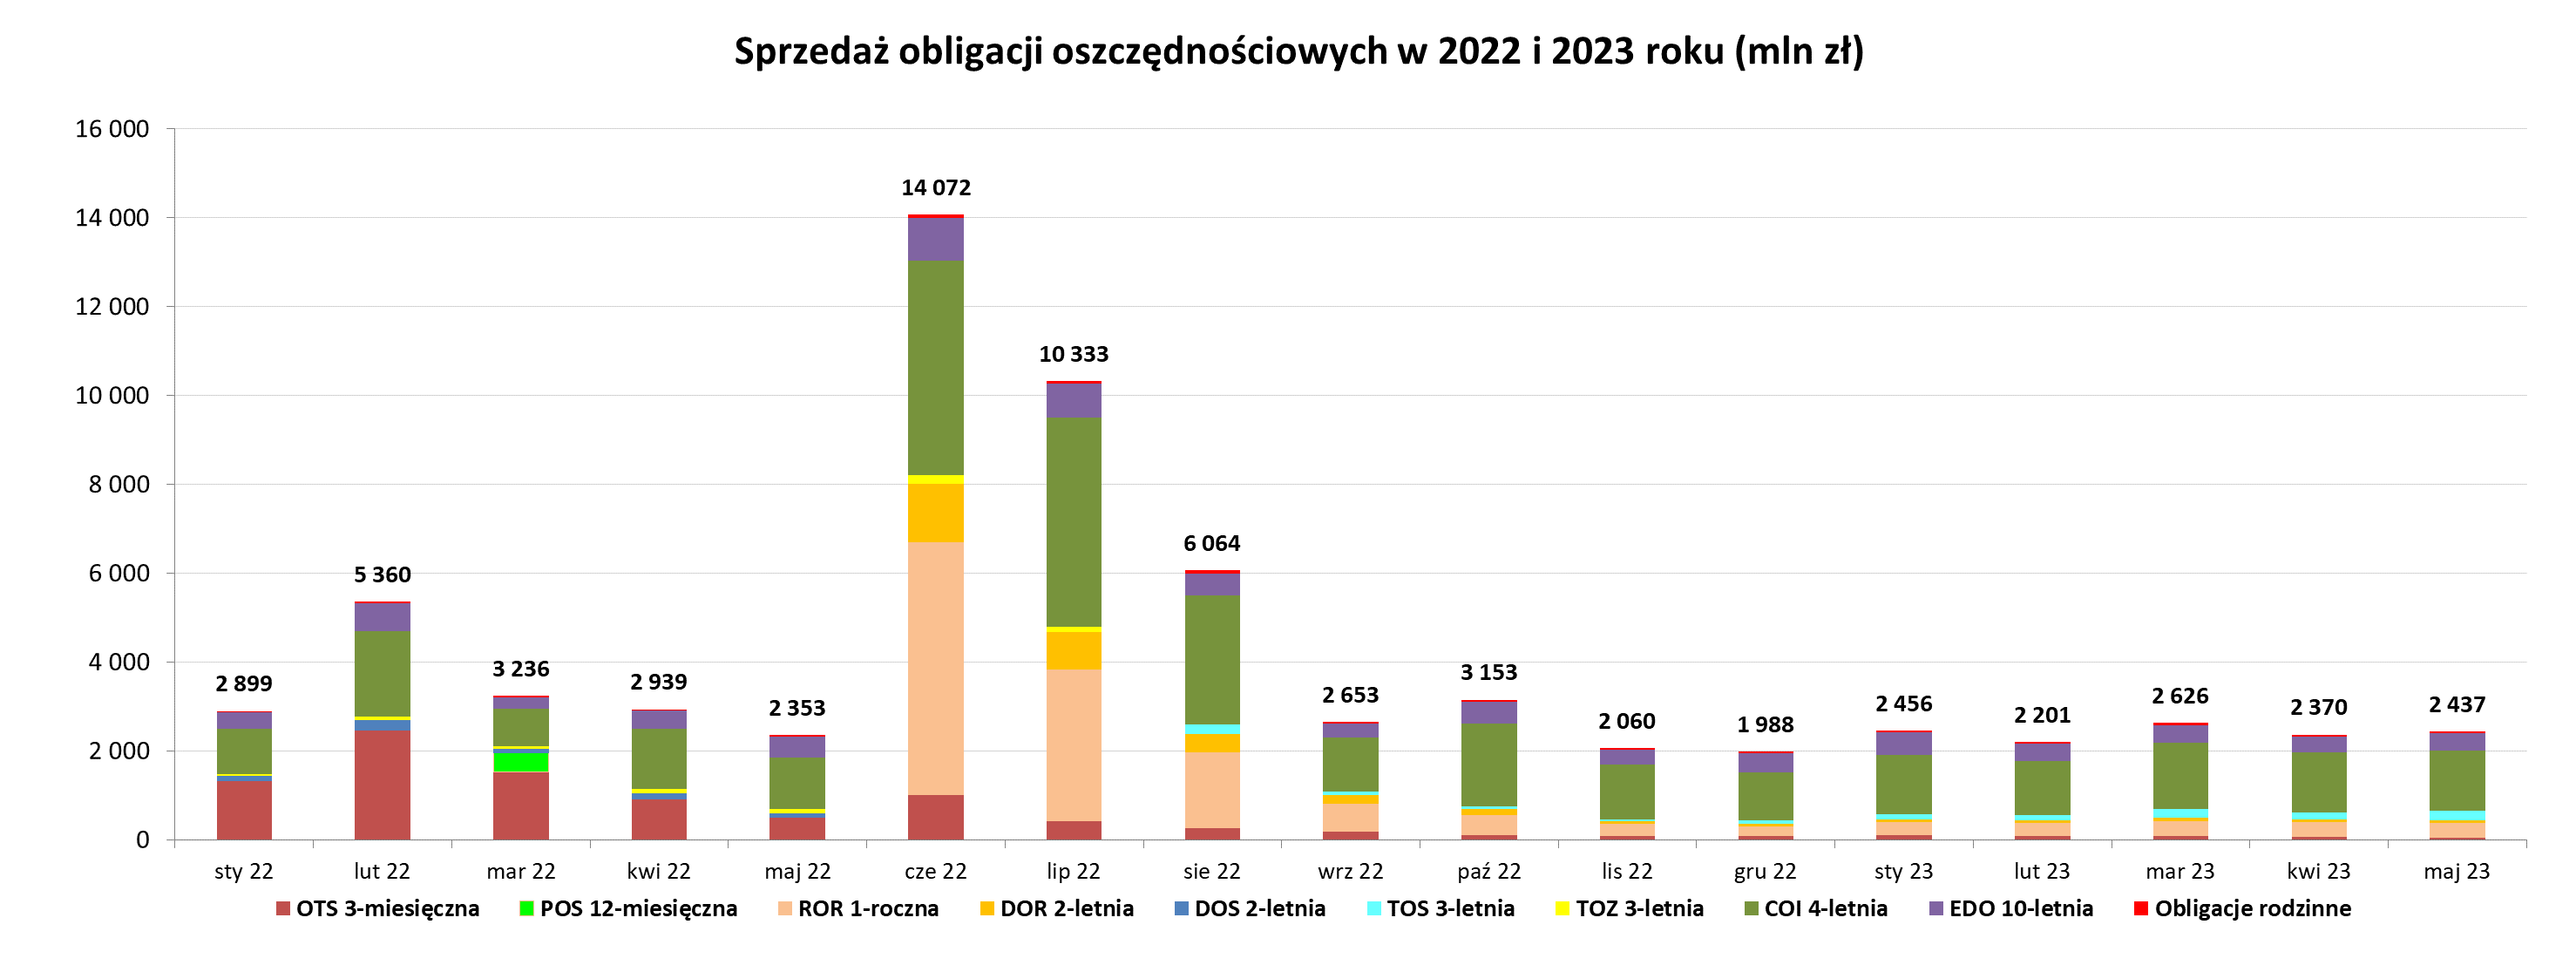 Sprzedaż obligacji oszczędnościowych w 2022 i 2023 roku, wykres słupkowy